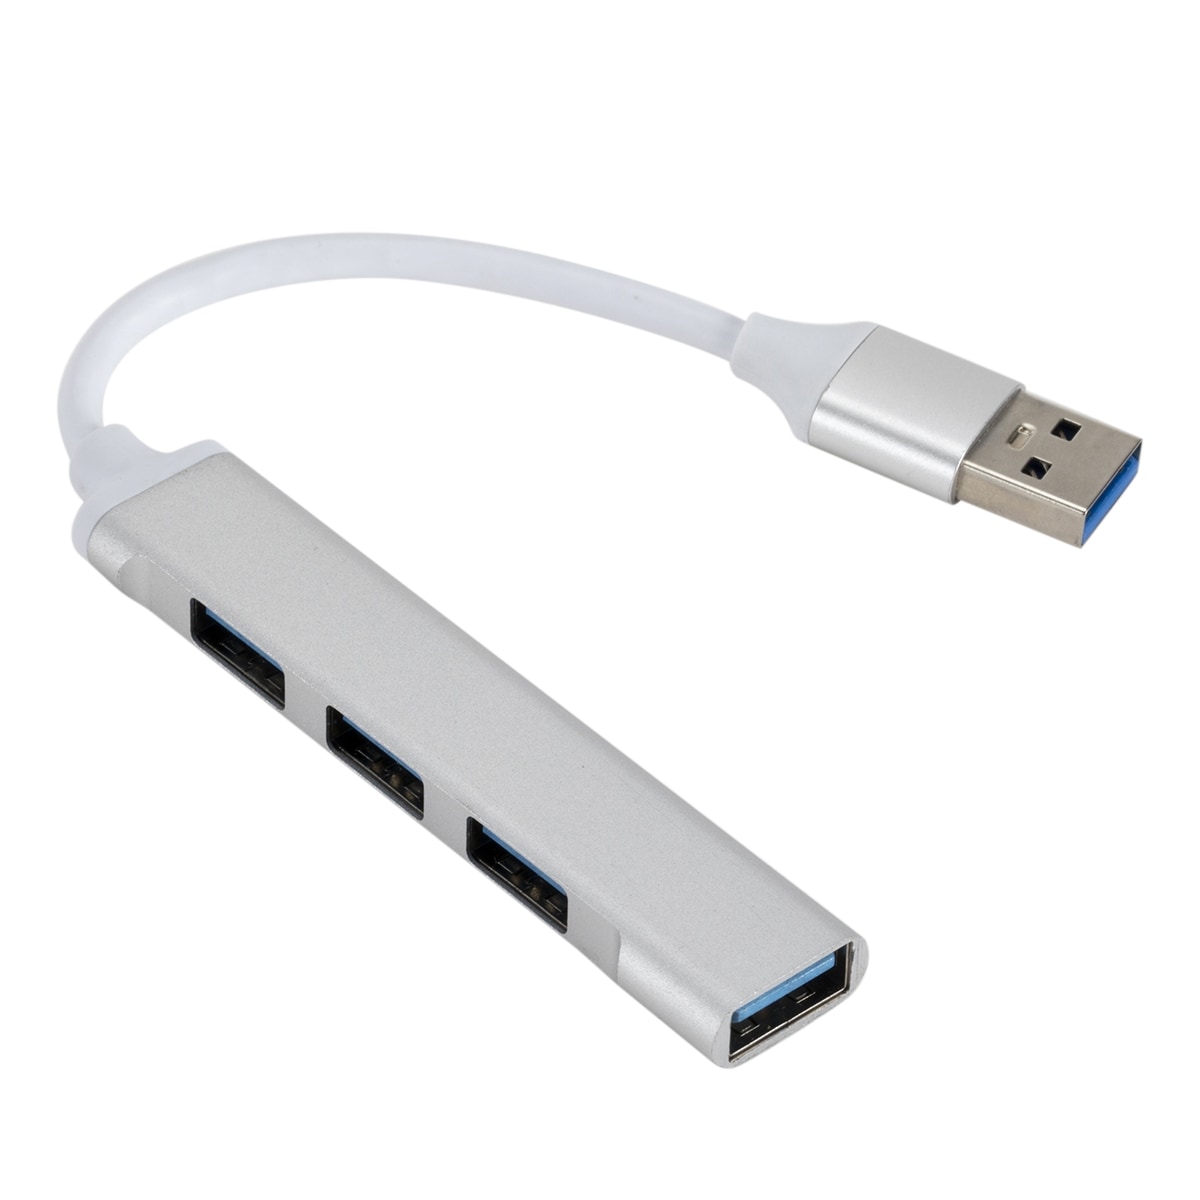 USB-Splitter USB 3.0 til 1x USB 2.0 & 3x USB 3.0